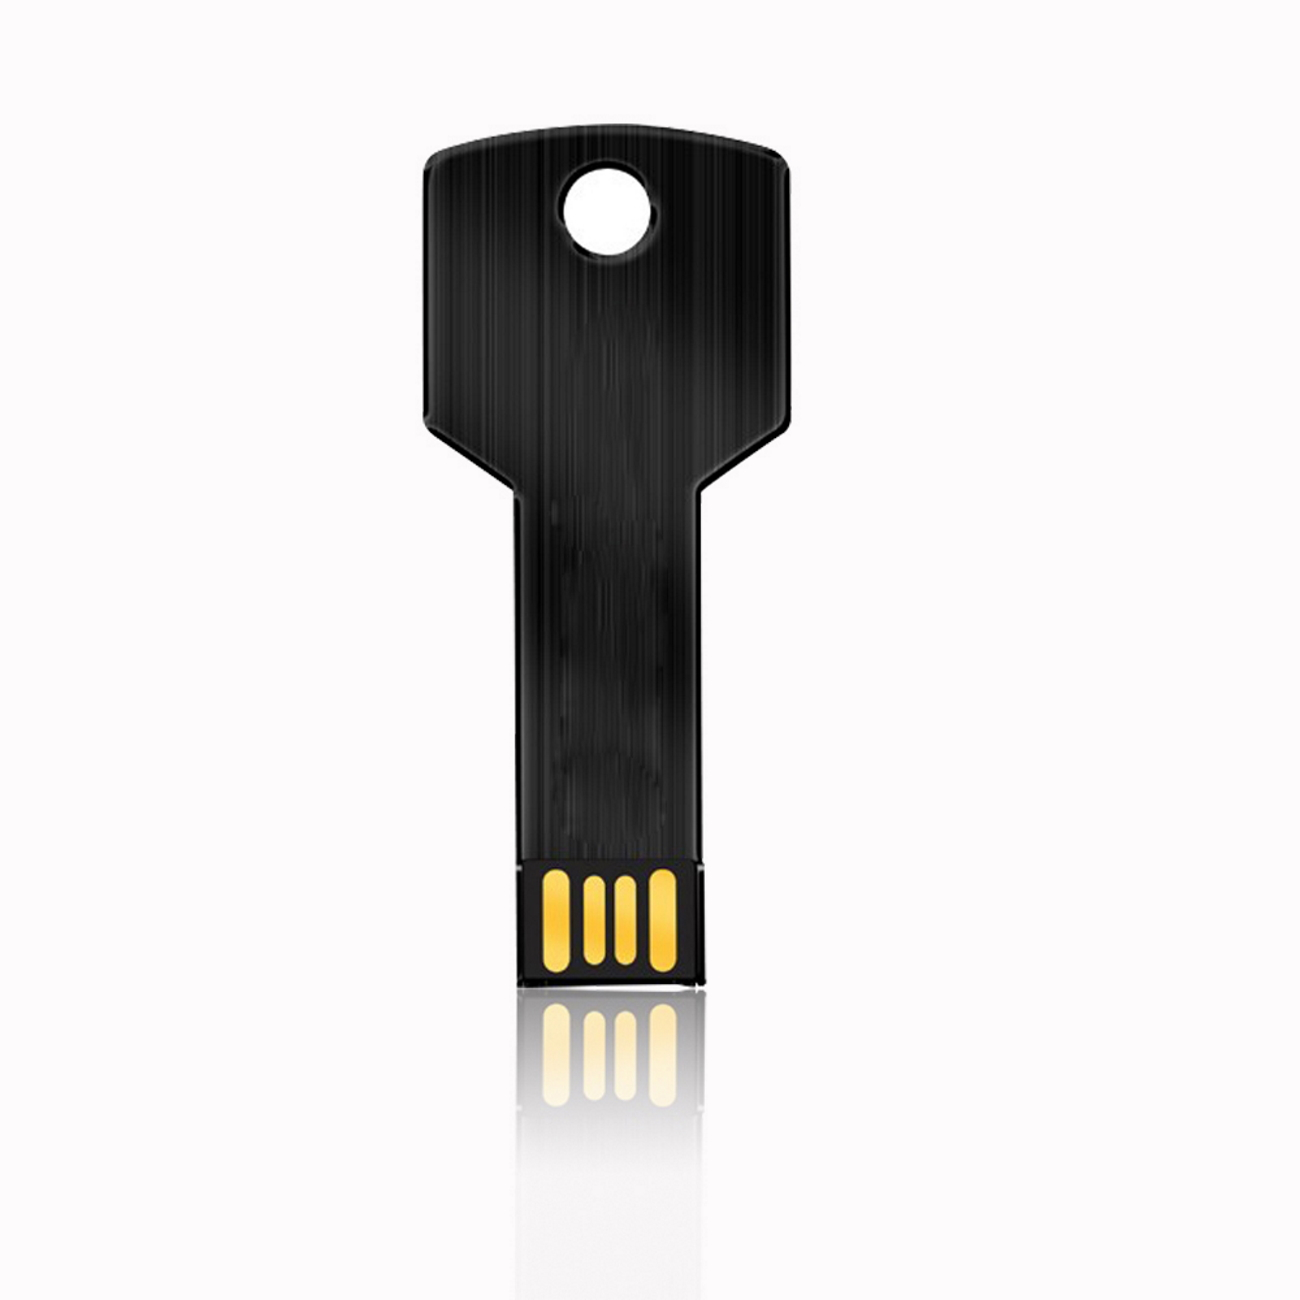 USB GERMANY Key Schwarz GB) 4GB (Schwarz, USB-Stick 4